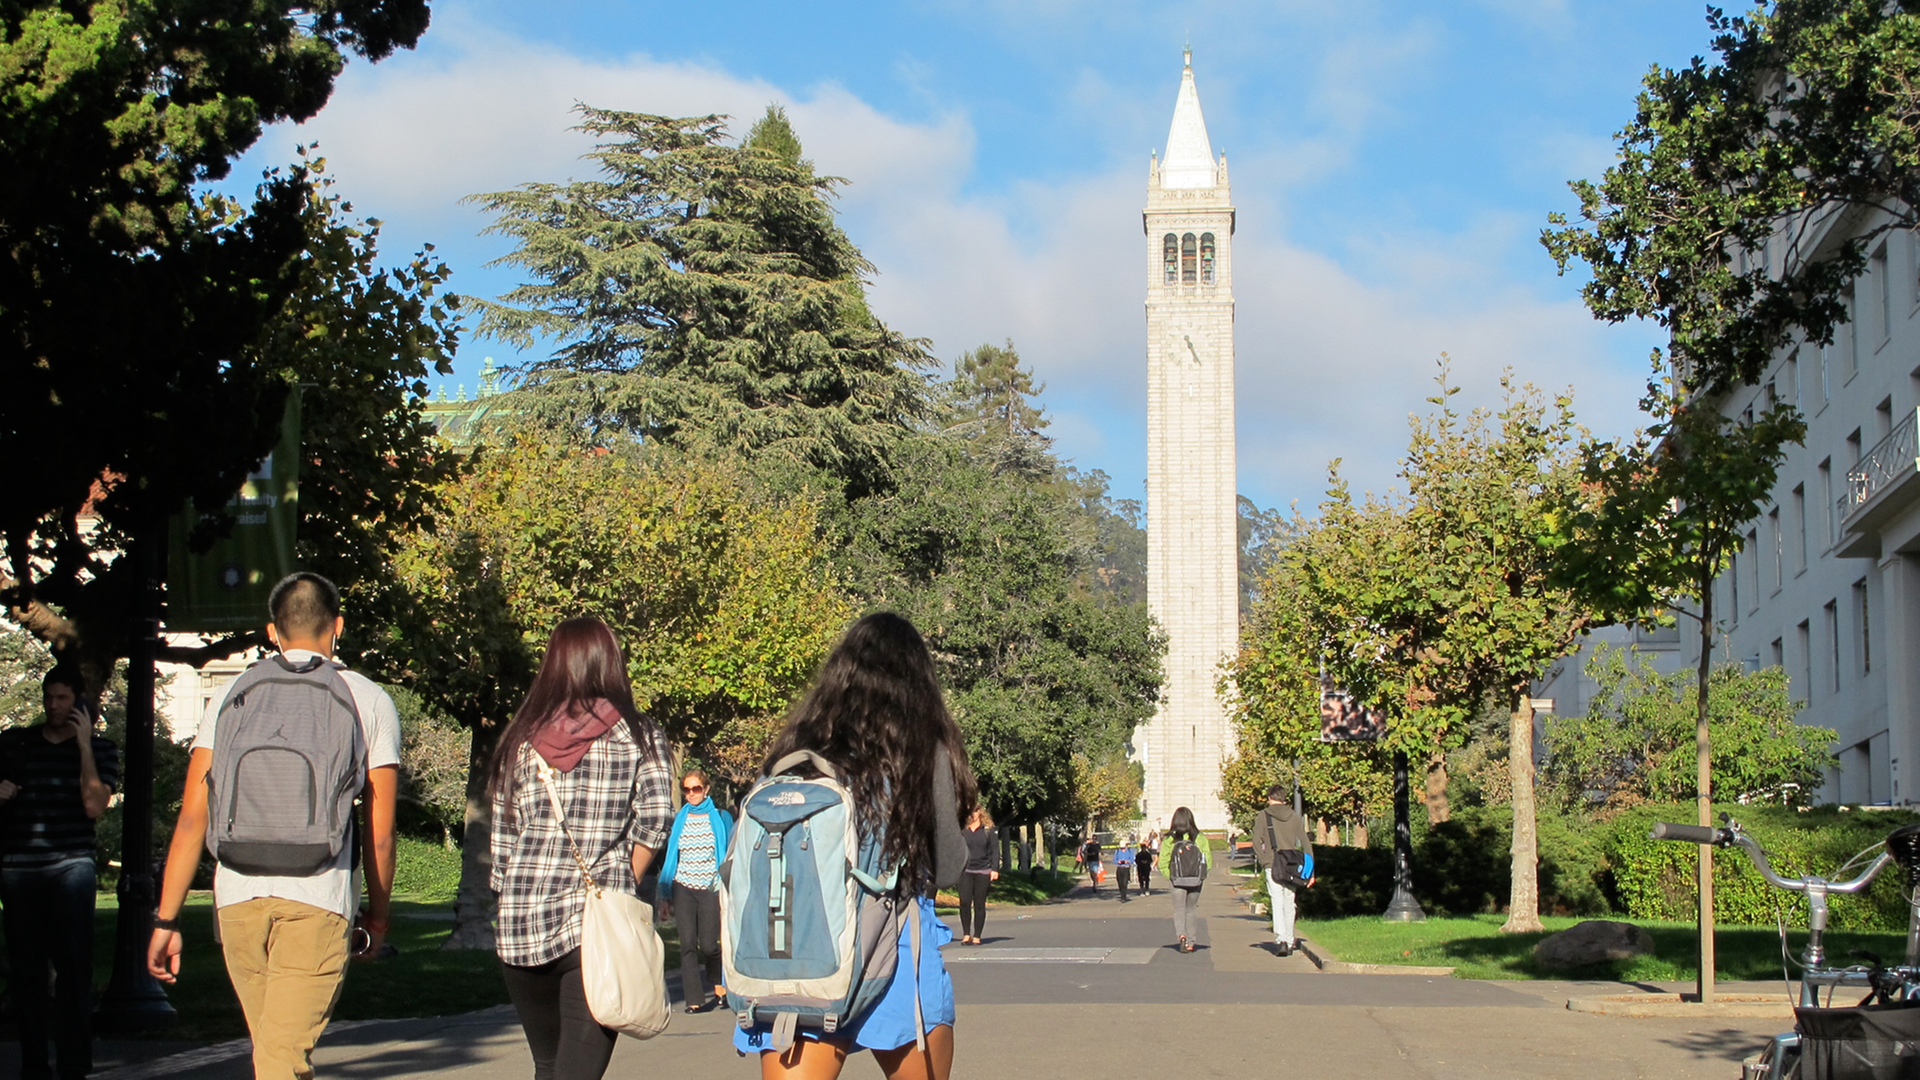 Studenten gehen über den Campus der Universität in Berkeley mit dem Campanile, einem Glockenturm und Wahrzeichen des Gebäudes.